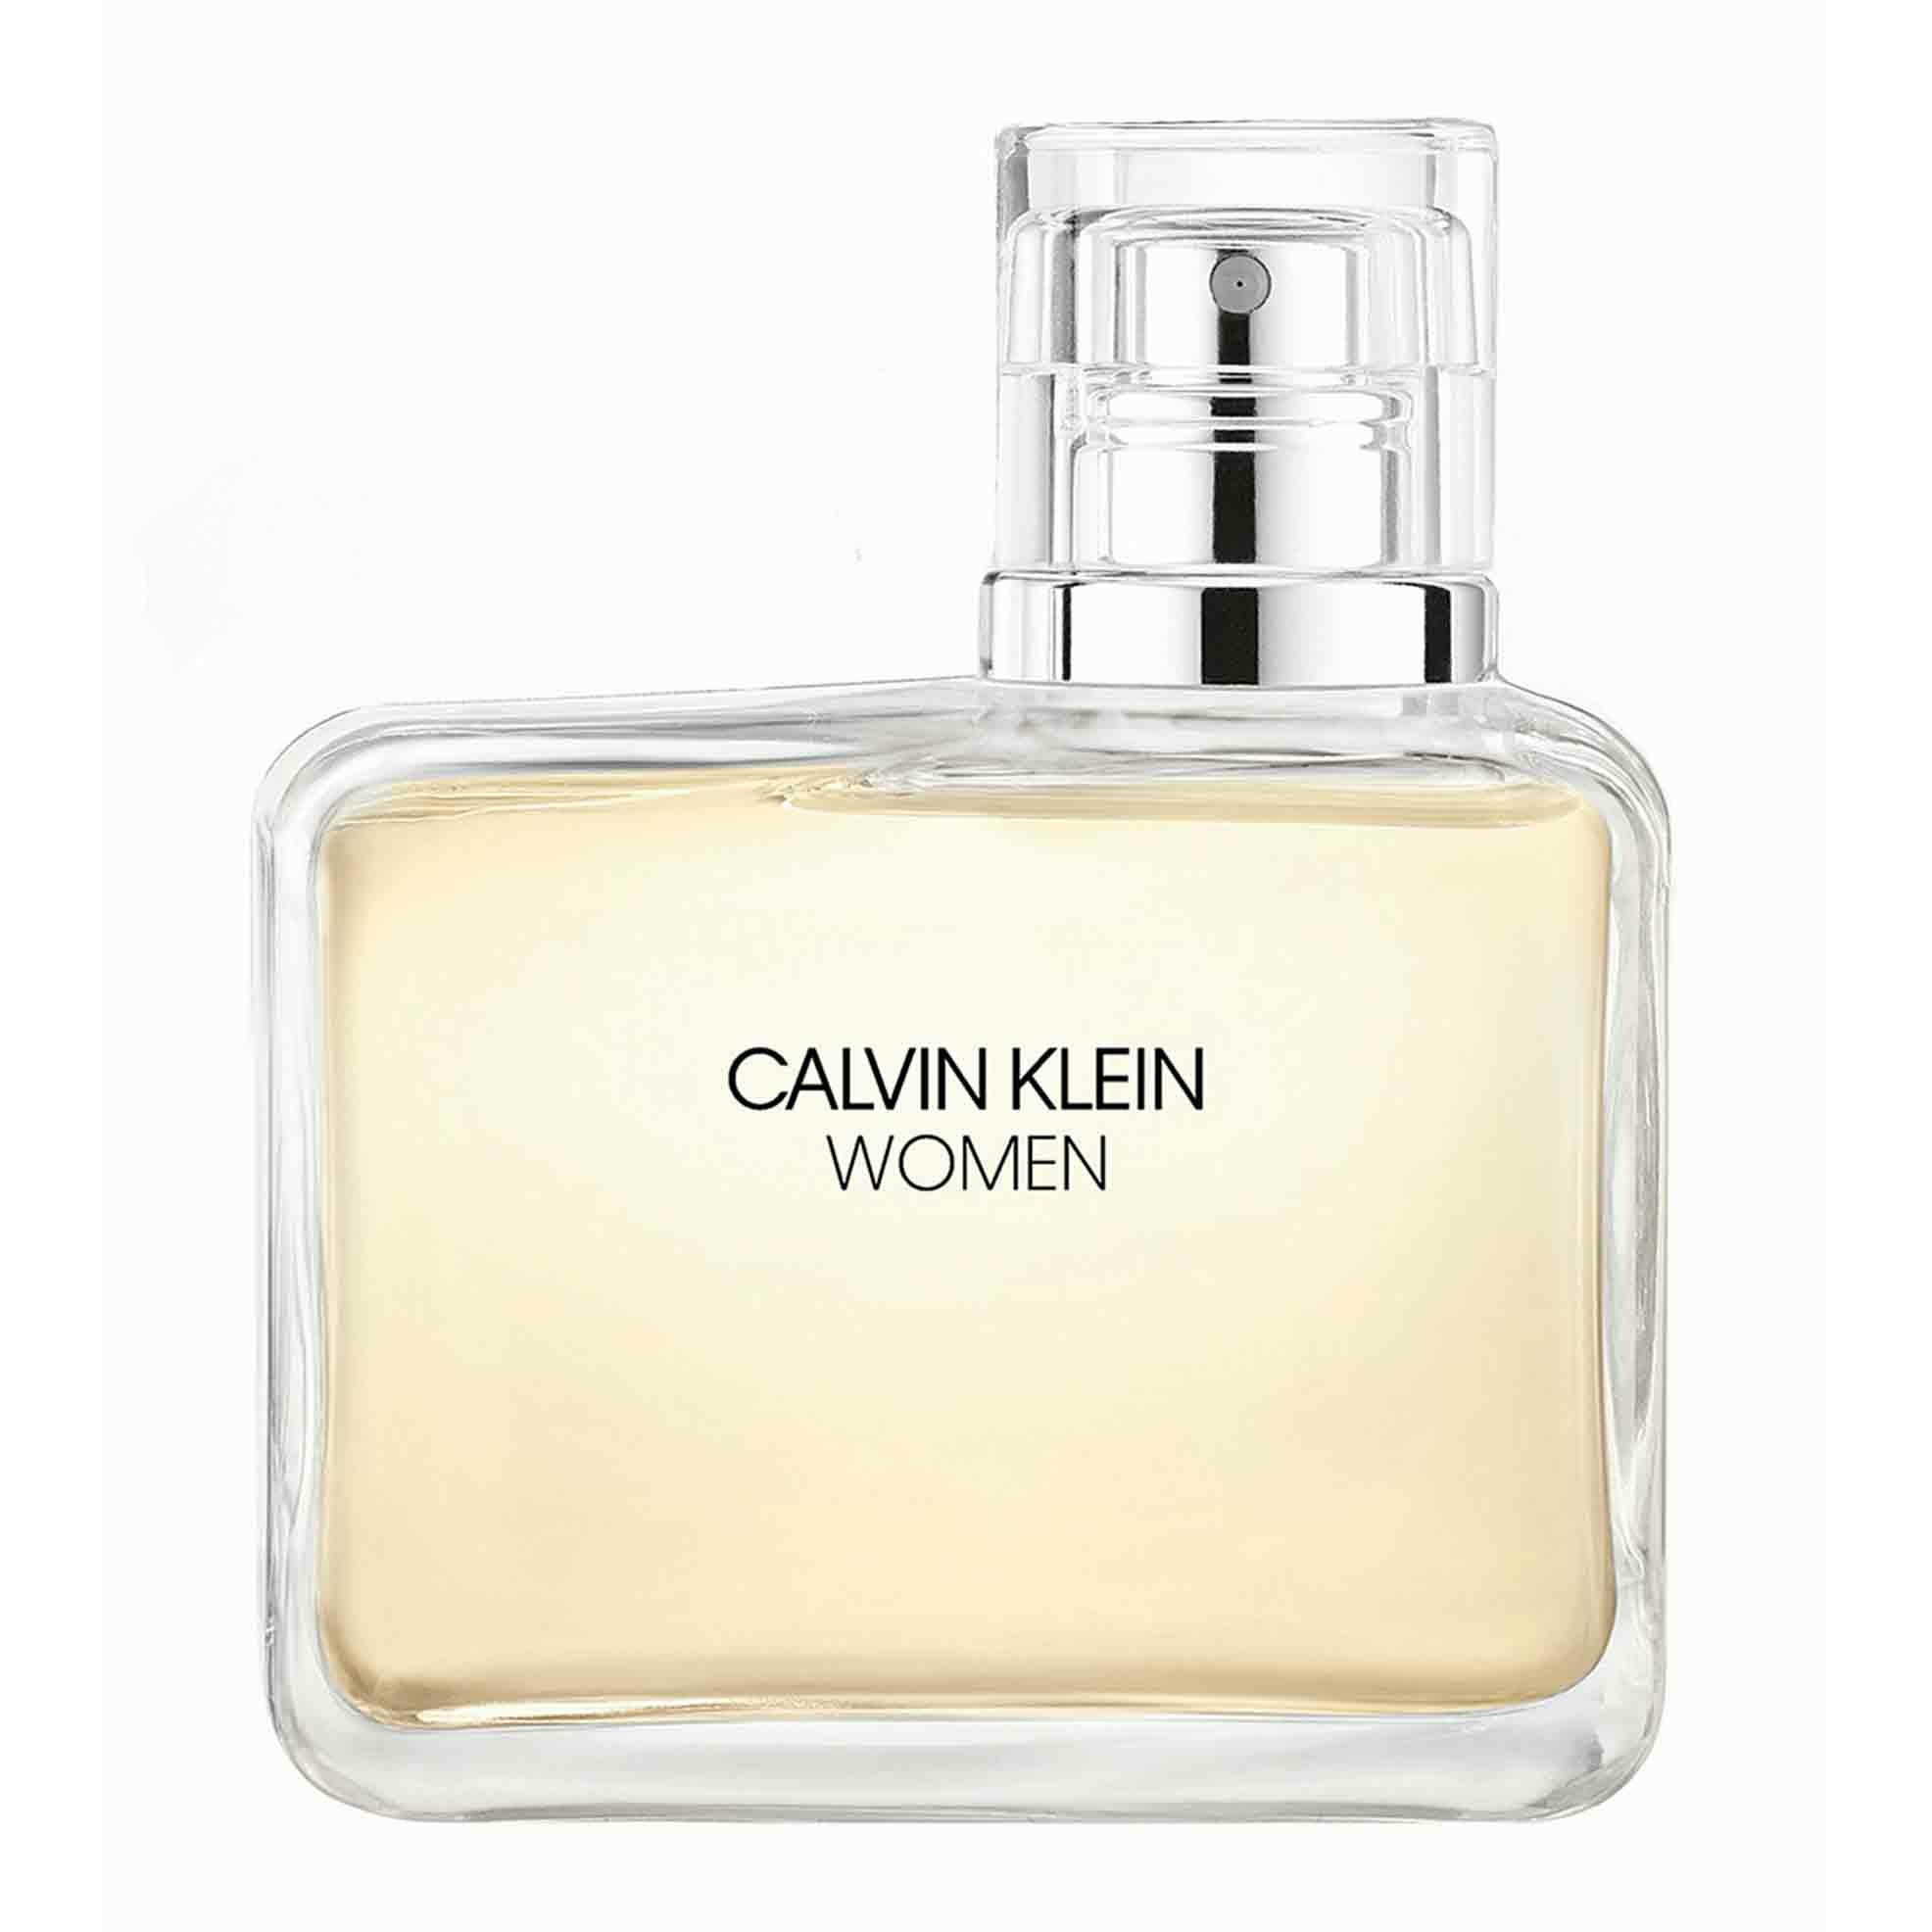 Ck Women Eau De Parfum - 100ML